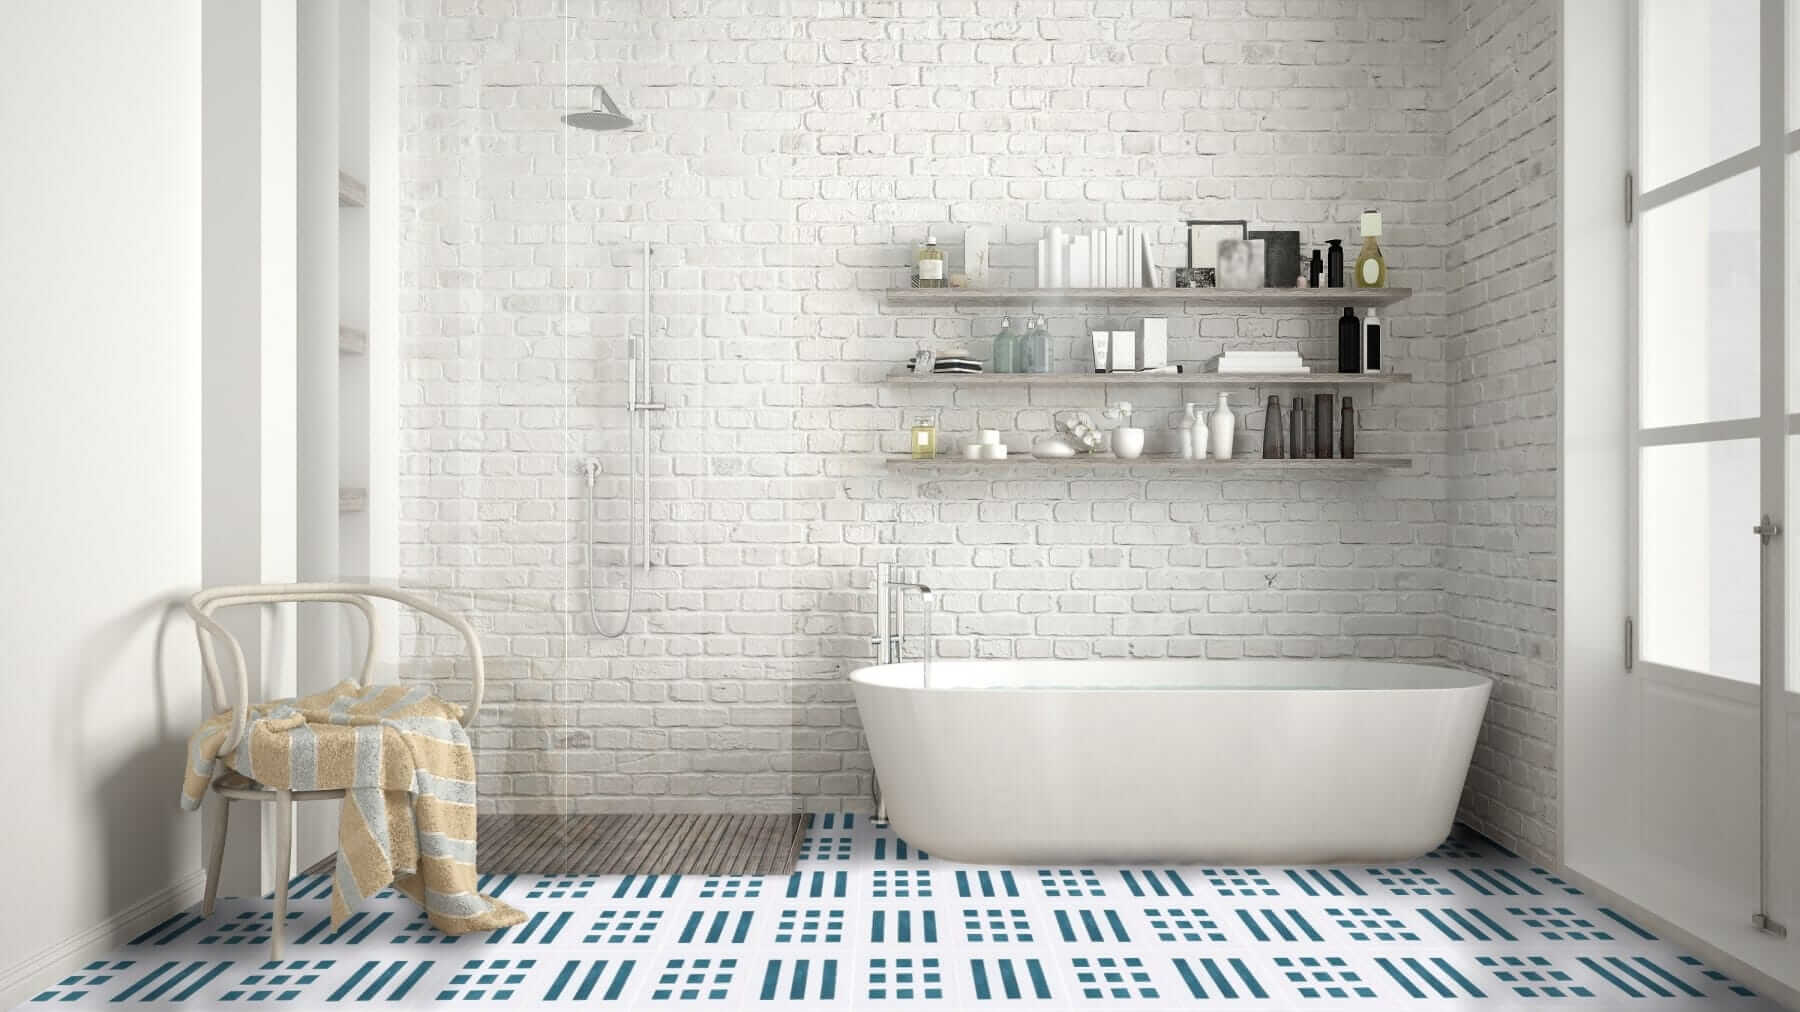 Geometric cement tiles on a bathroom floor